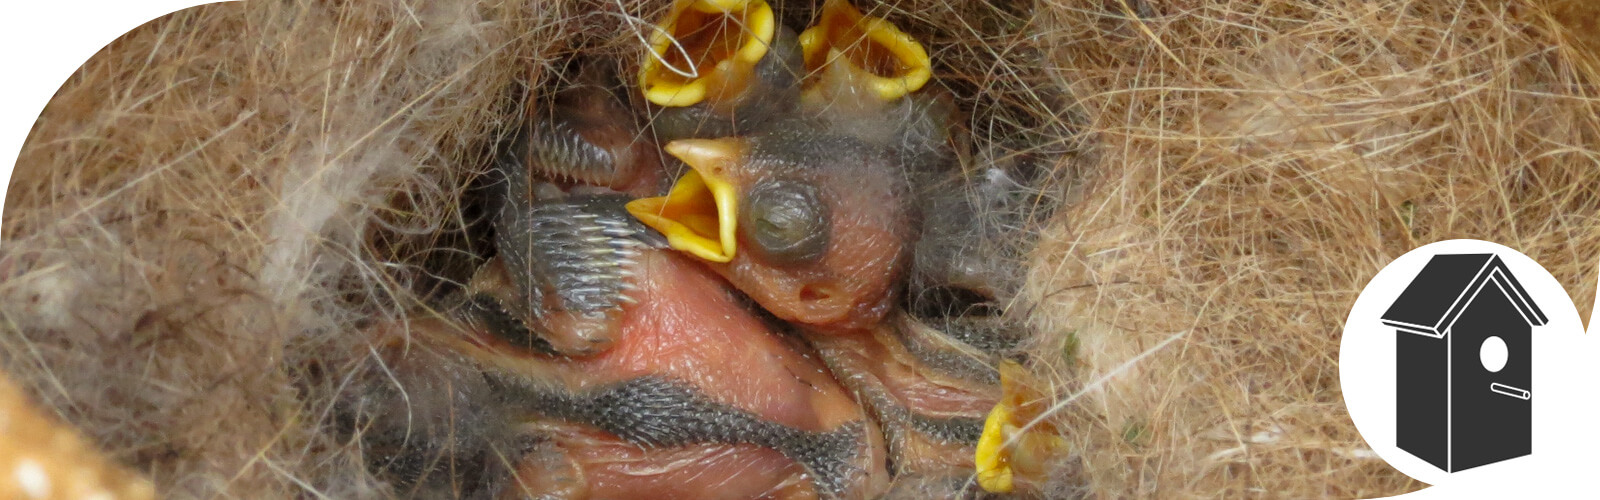 Nestkasten voor tuinvogels - www.vogelhuisje.com